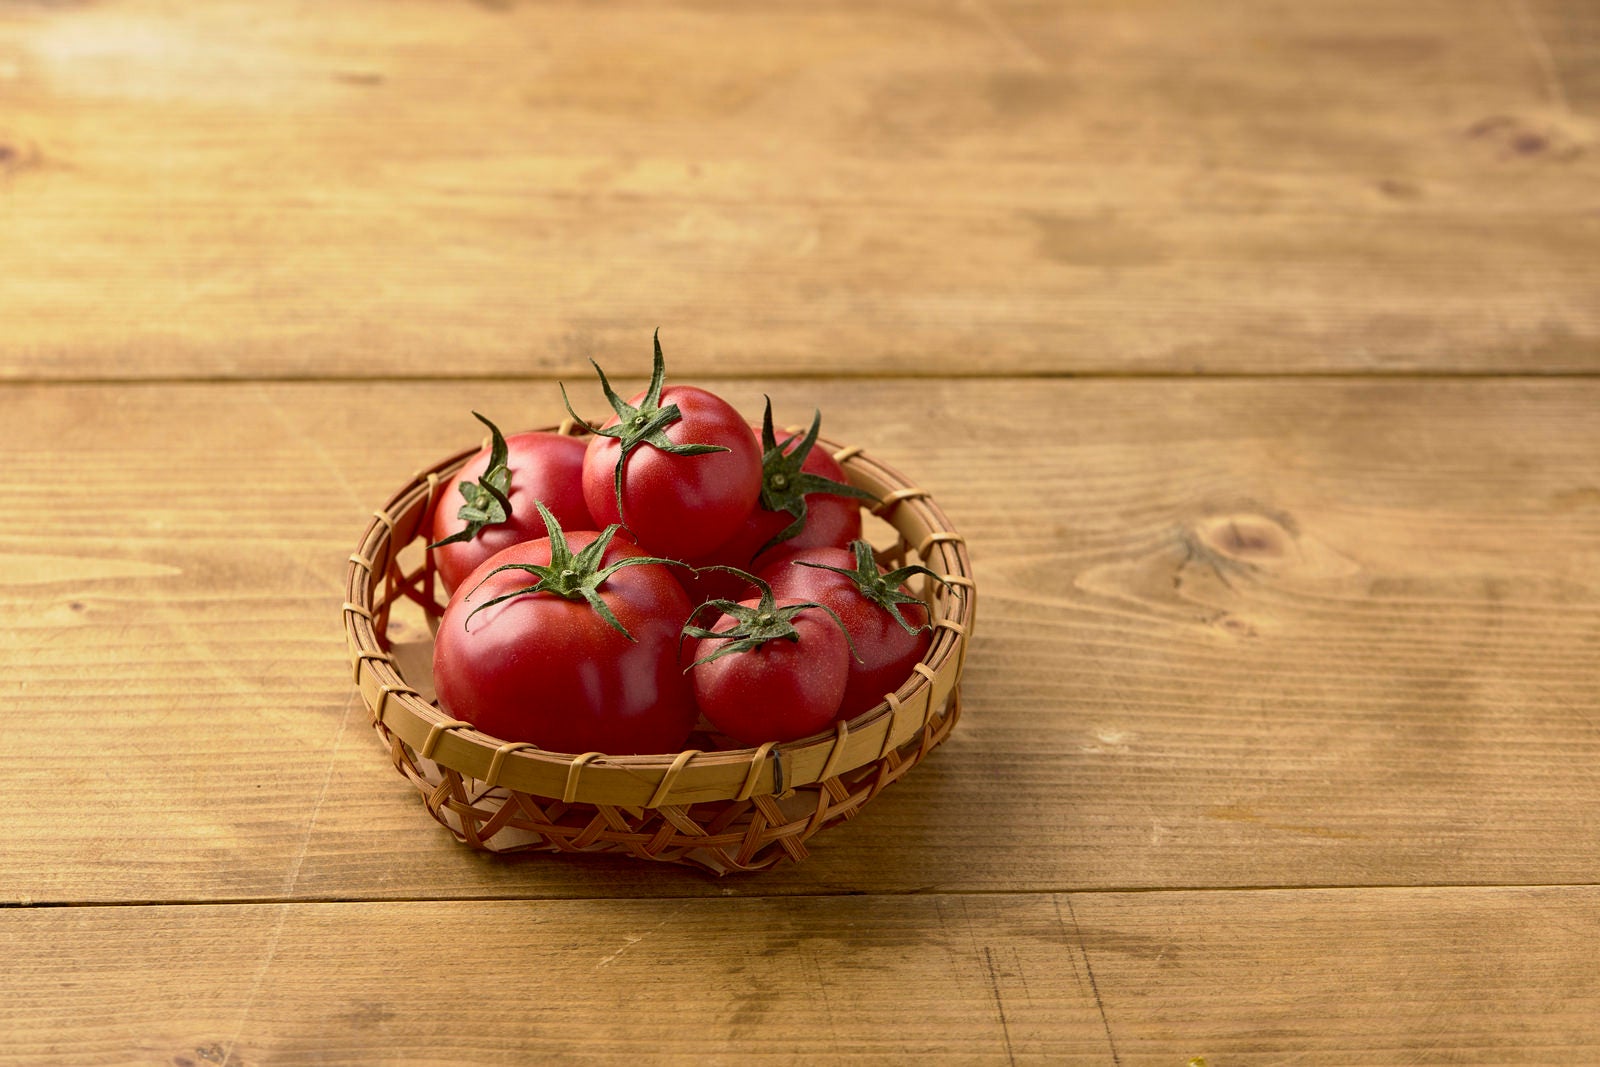 「籠の中のミニトマト」の写真